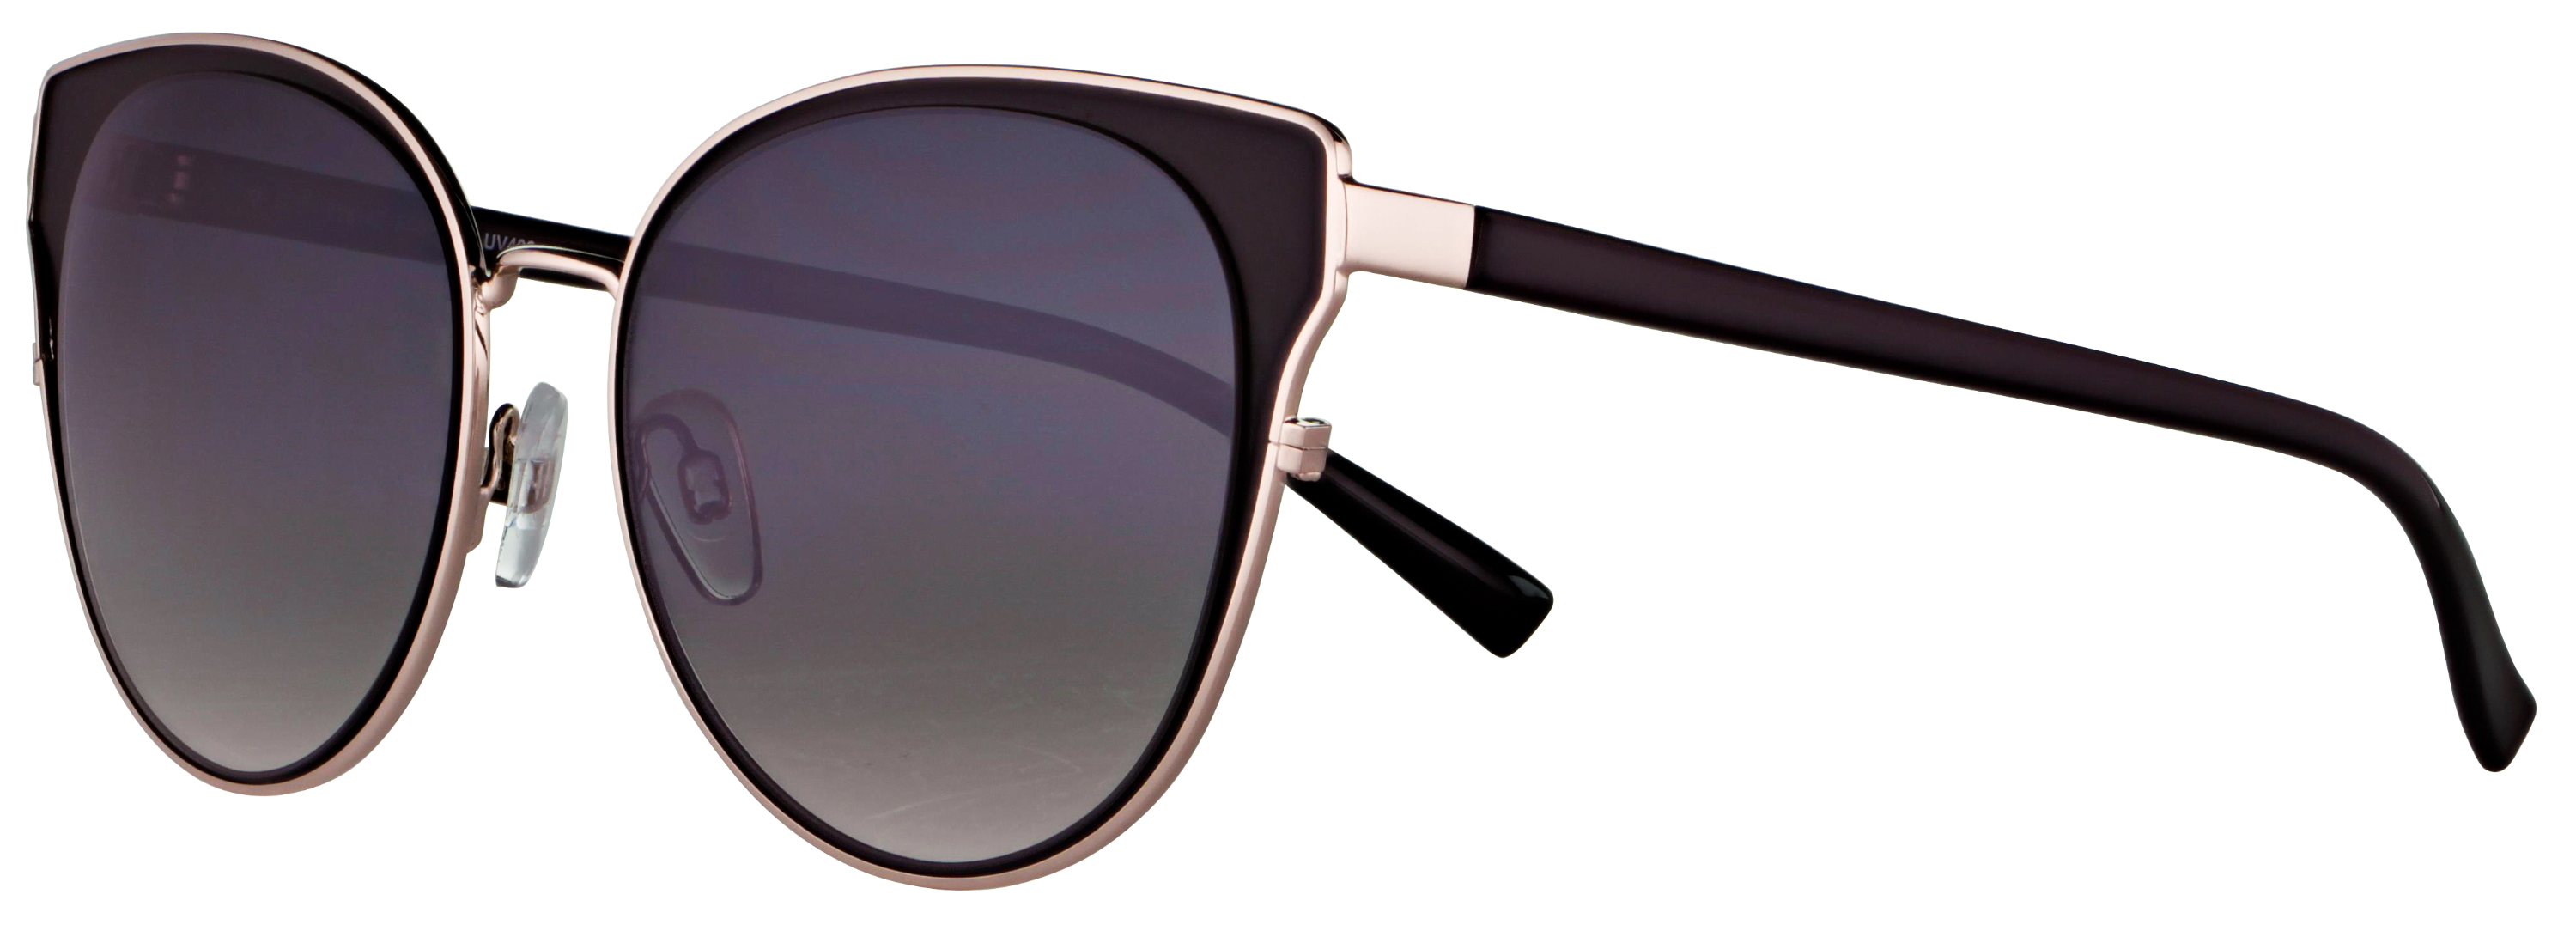 Das Bild zeigt die Sonnenbrille 718142 von der Marke Abele Optik in schwarz / silber.